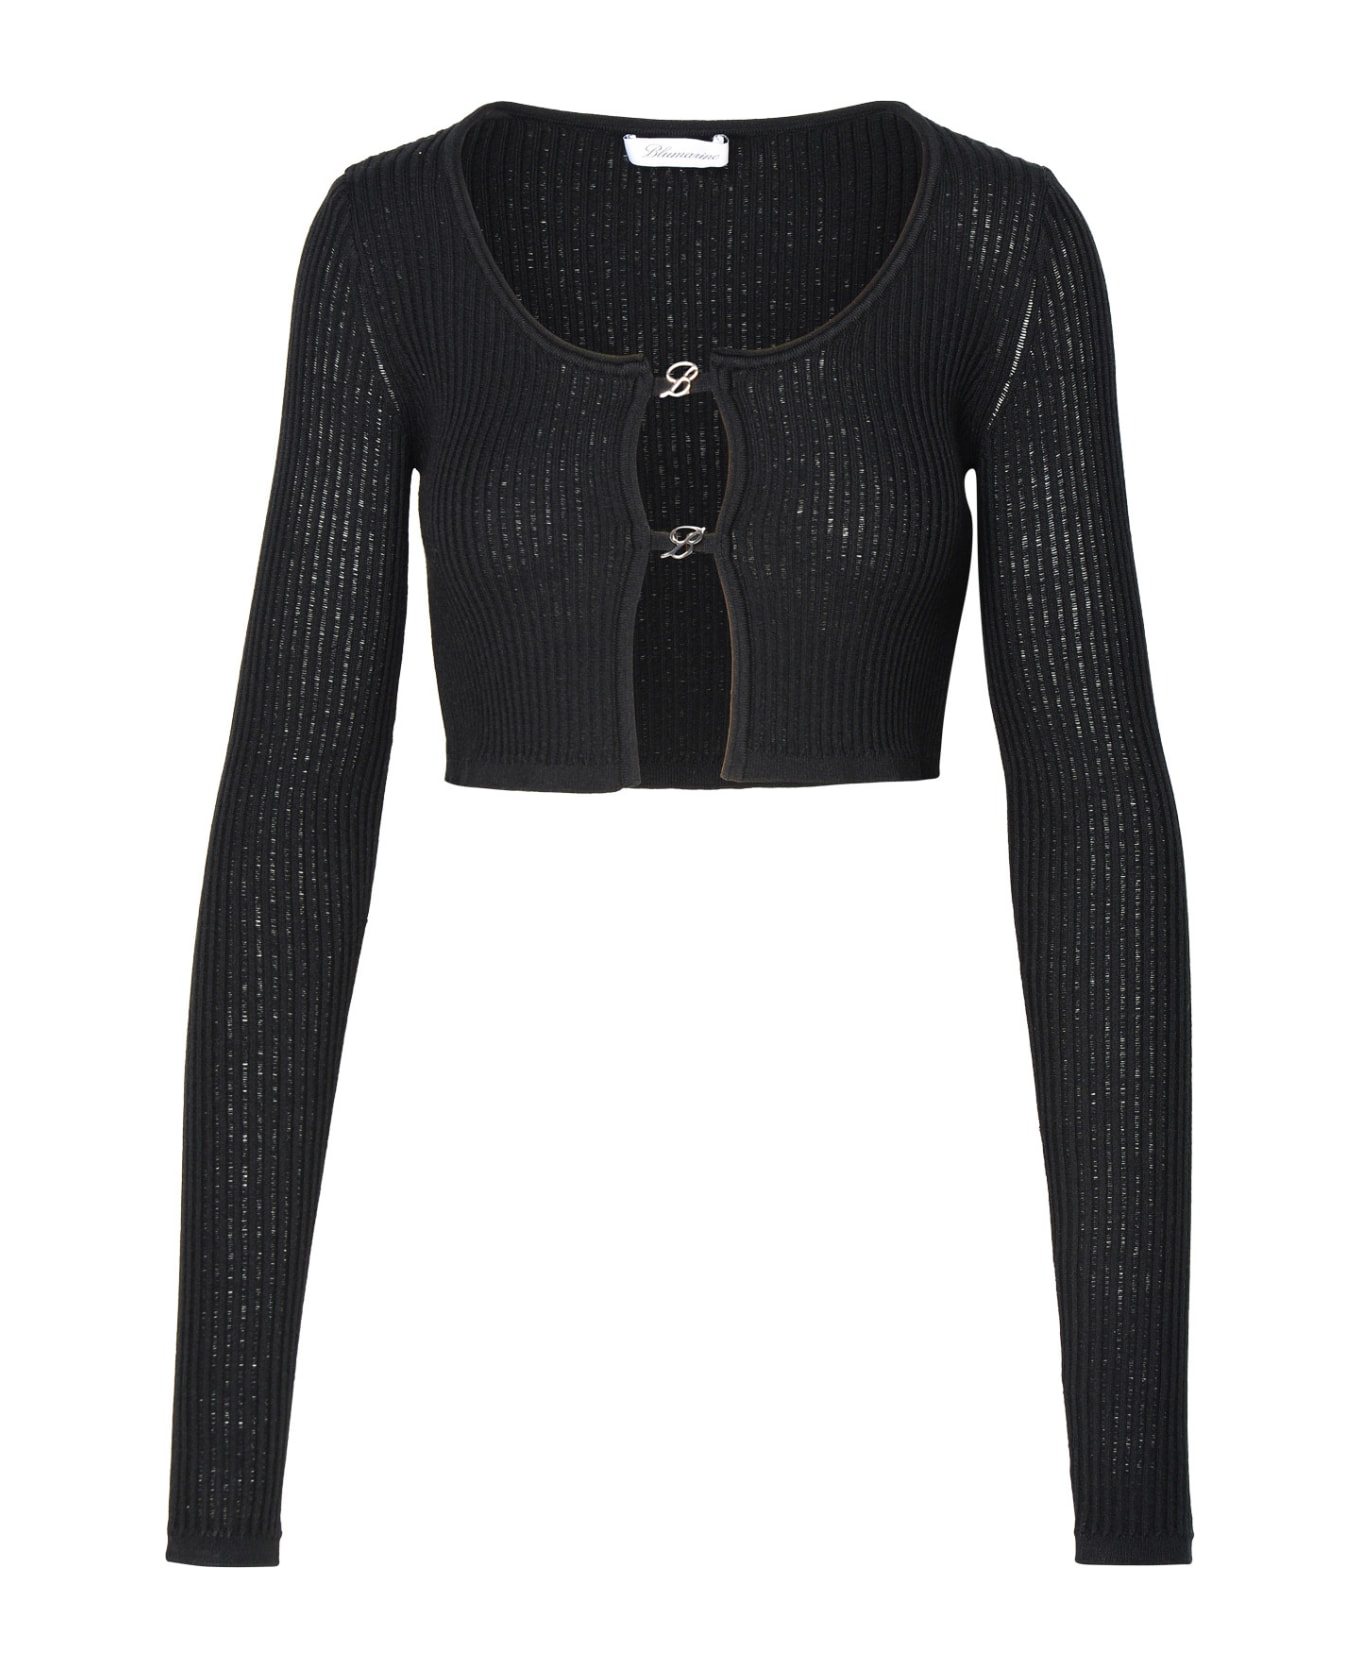 Blumarine Crop Sweater In Black Viscose Blend - Black